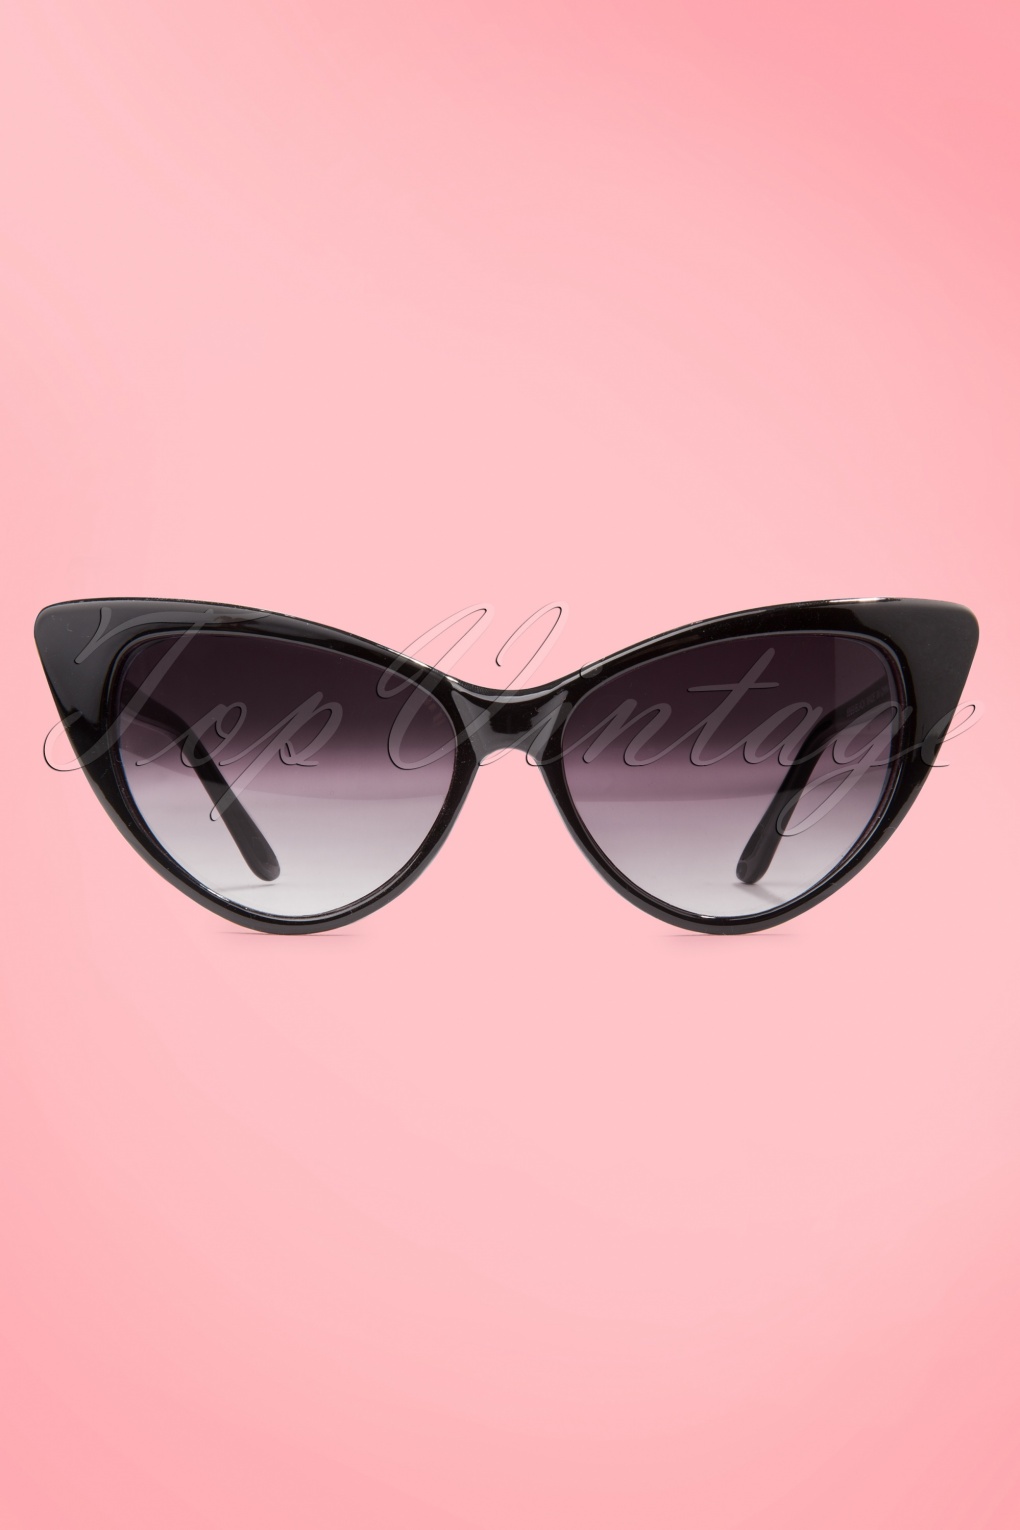 CAT Eye lunettes lunettes de soleil 50er années z jupon robe vintage xxl chat 503 